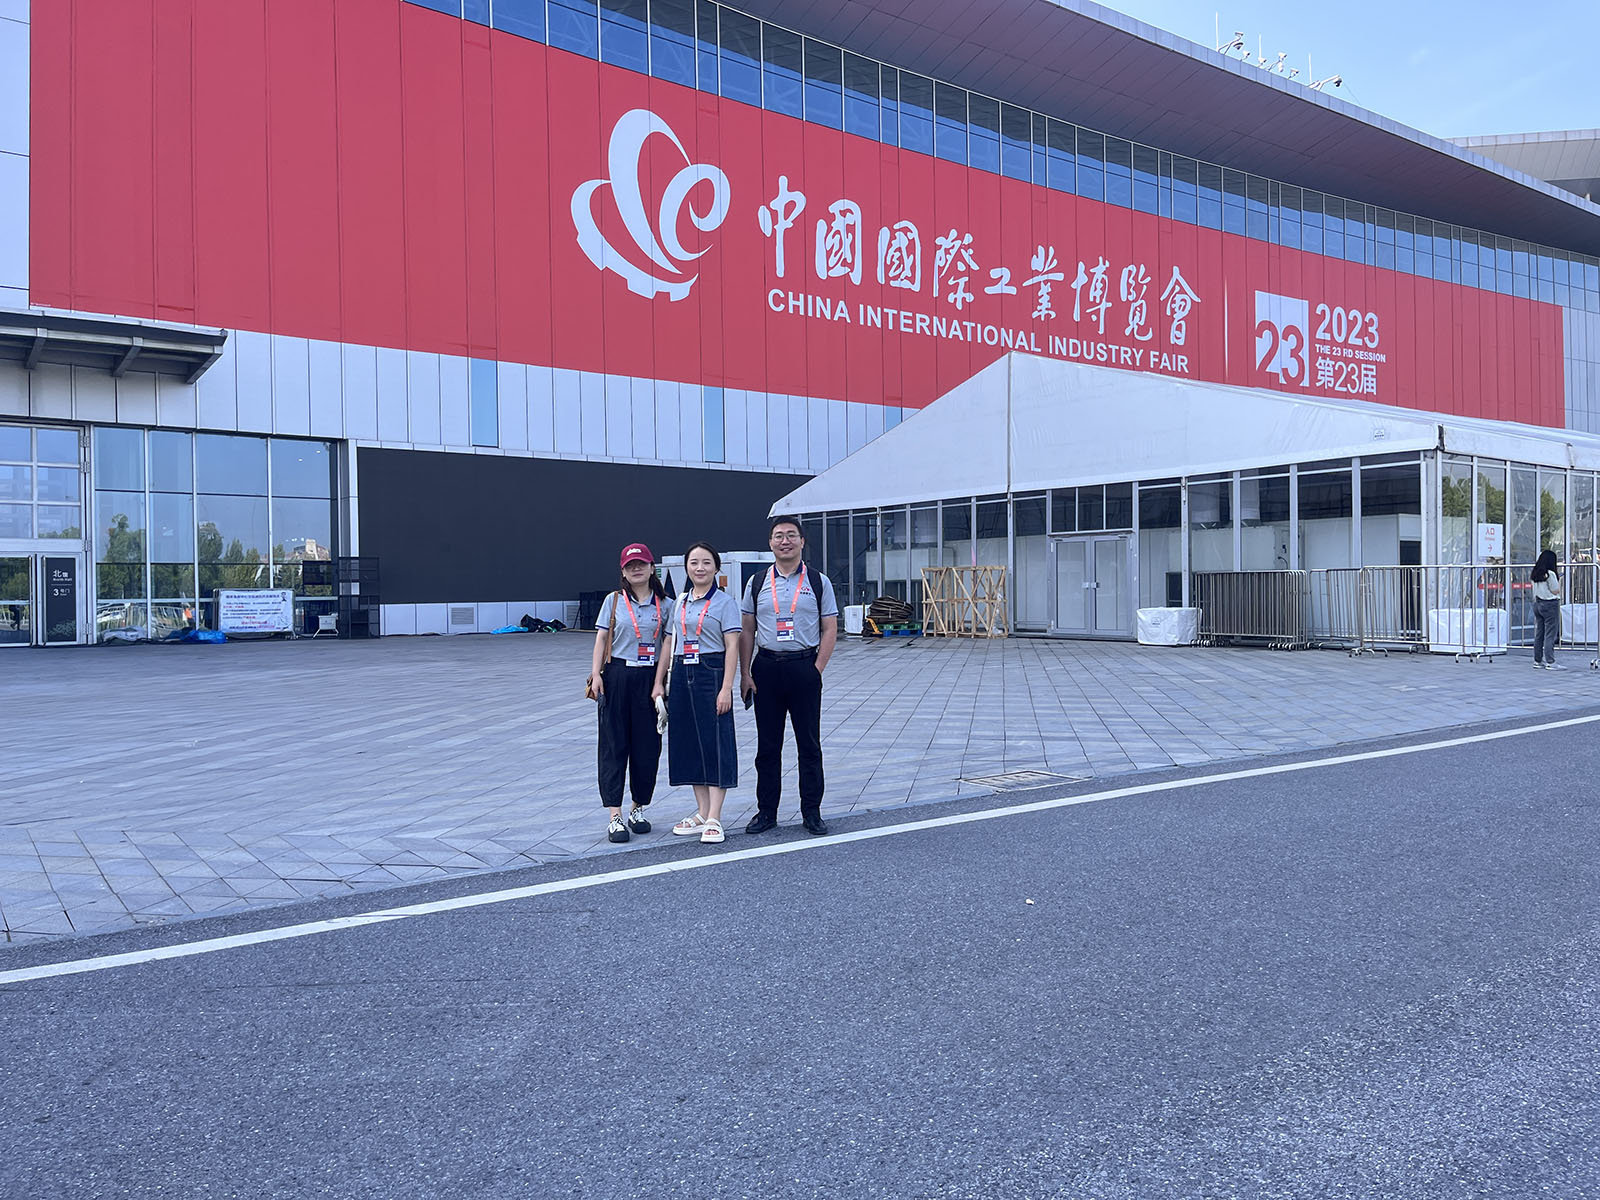 西安澳门尼威斯人网站8311欢迎您参展上海举办的中国国际工业博览会